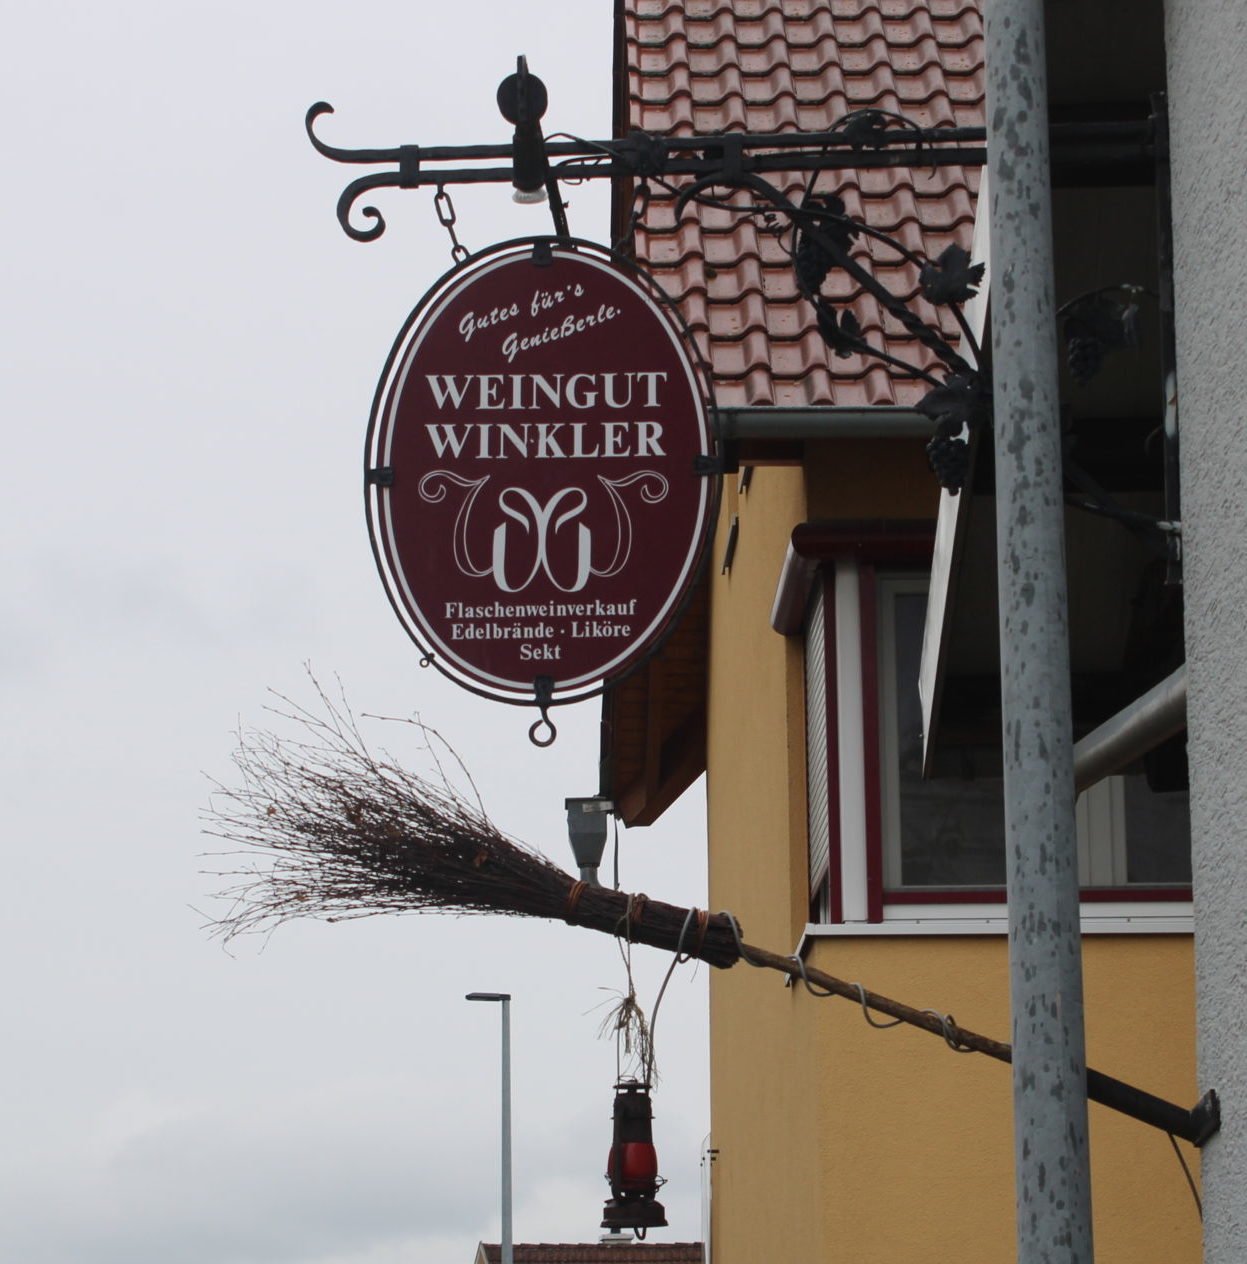 (c) Winklerwein.de